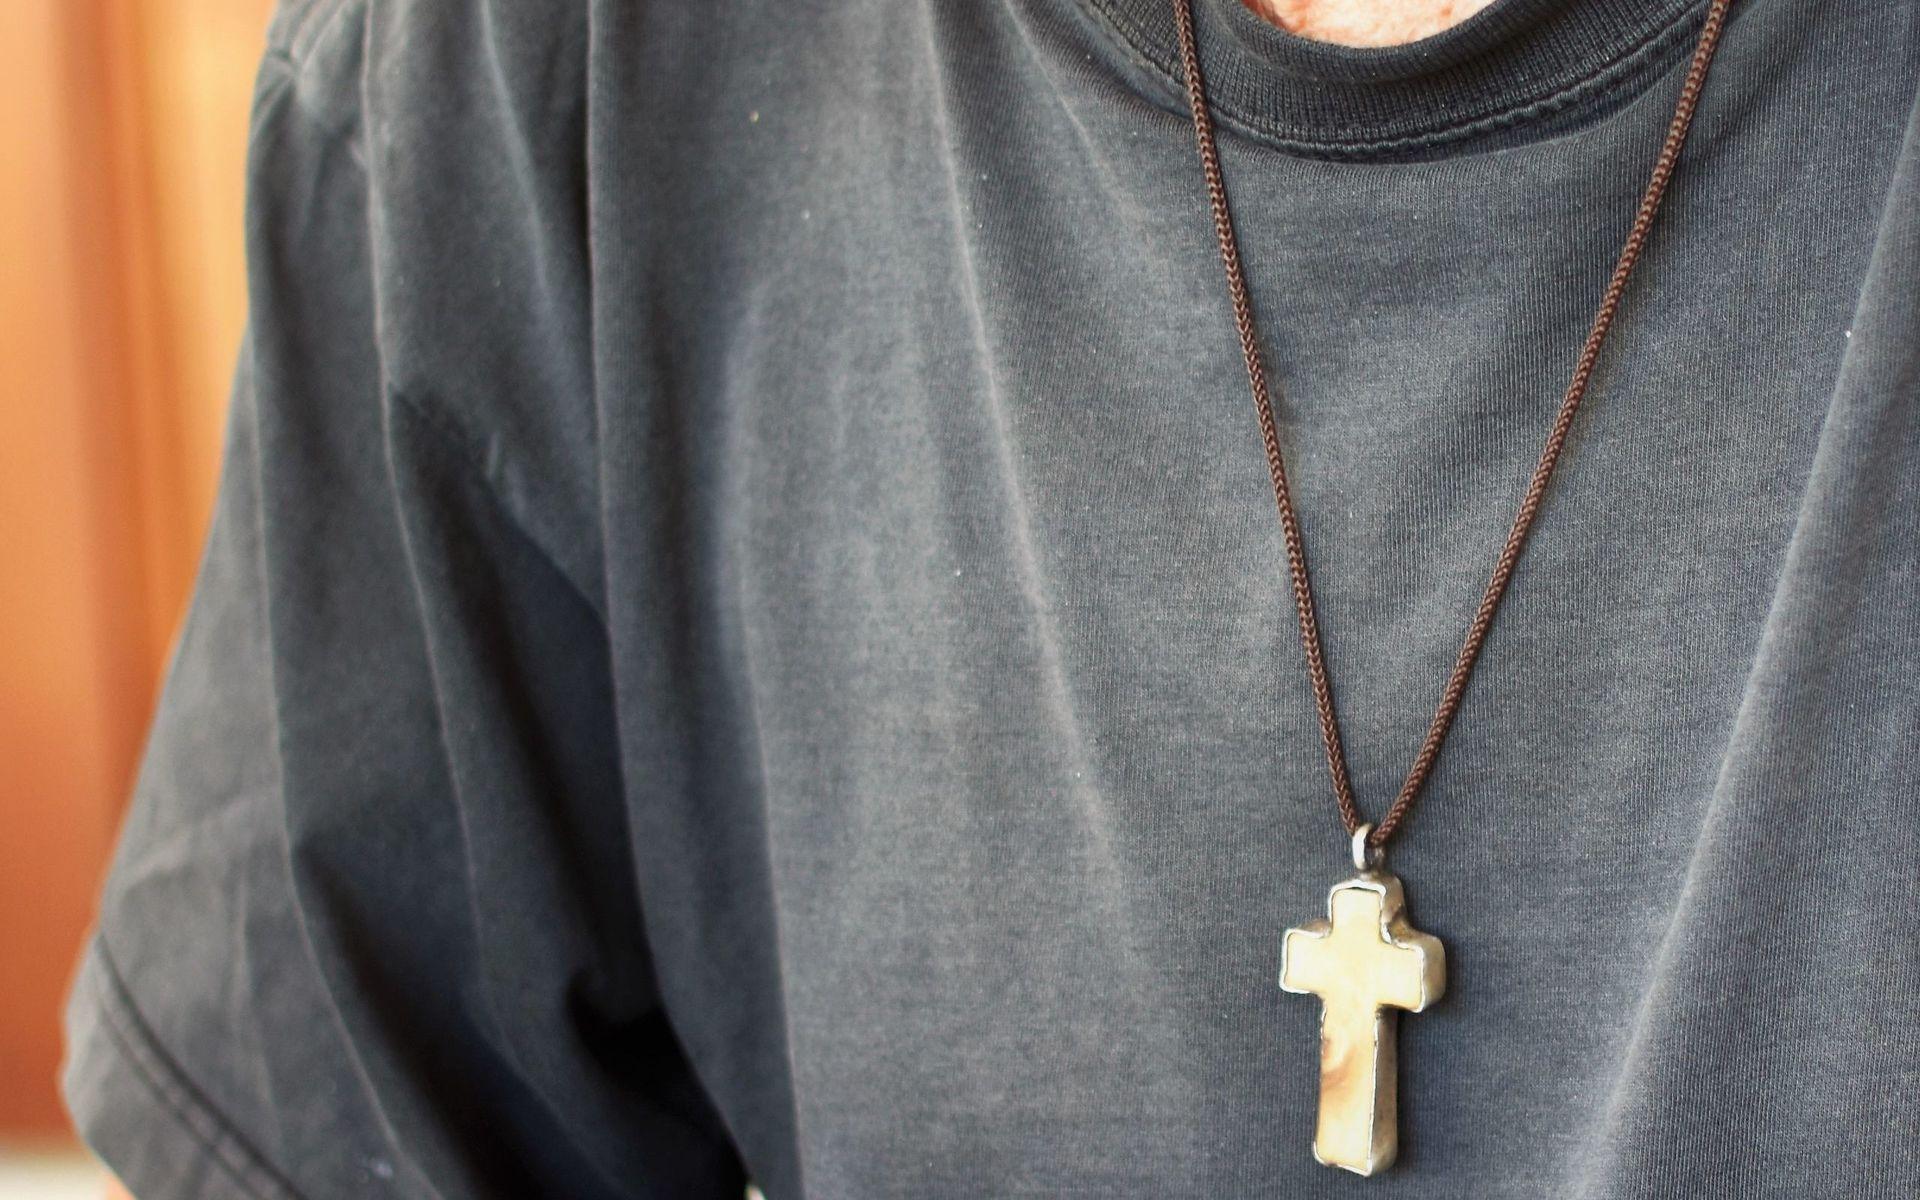 Korset vårdar han ömt – och uppdraget som diakon är livslångt.